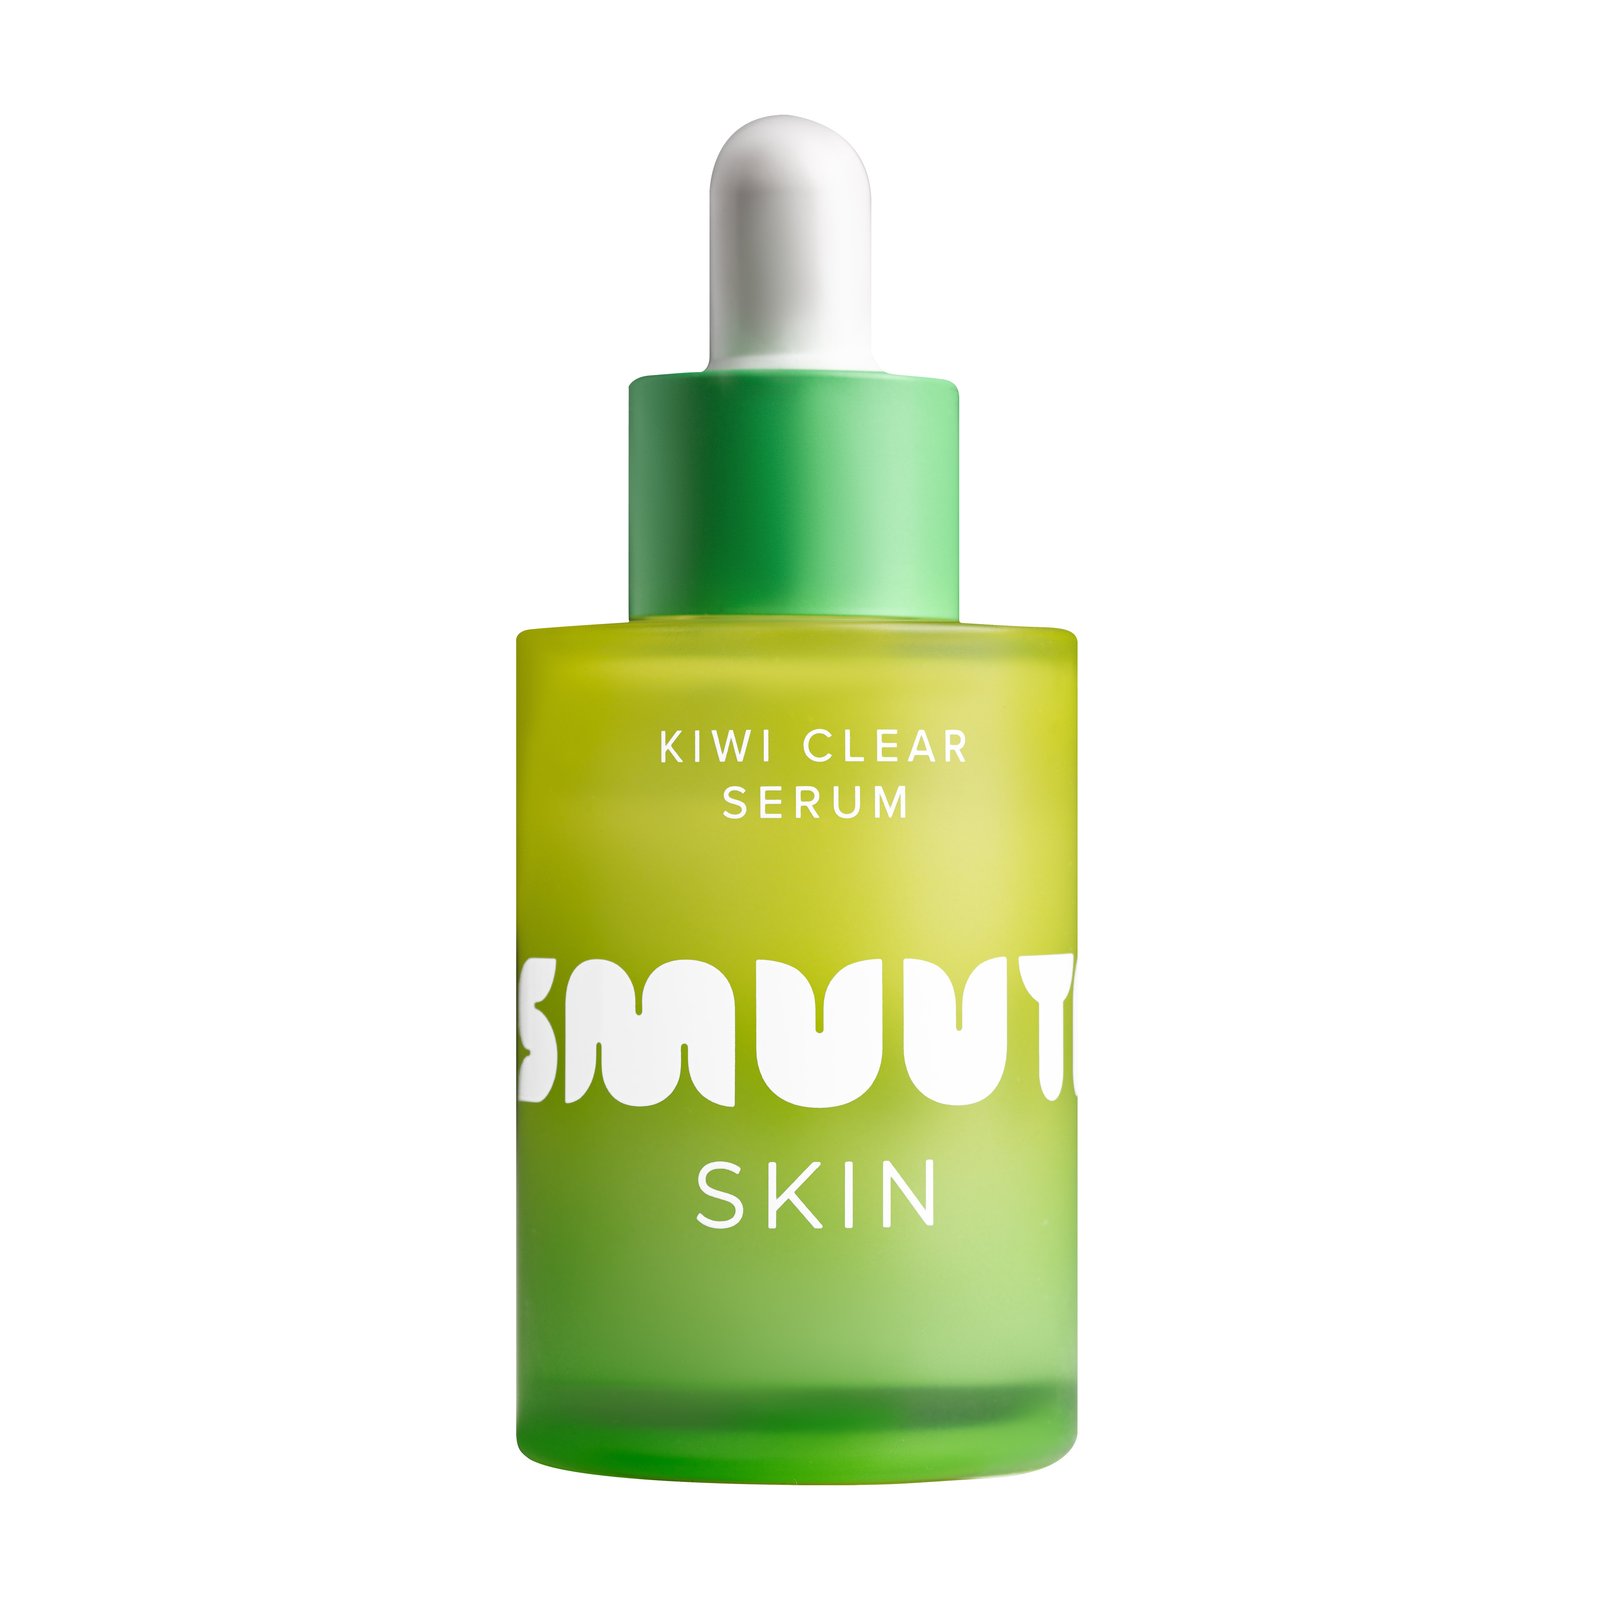 Smuuti Skin Kiwi Clear Serum 30ml